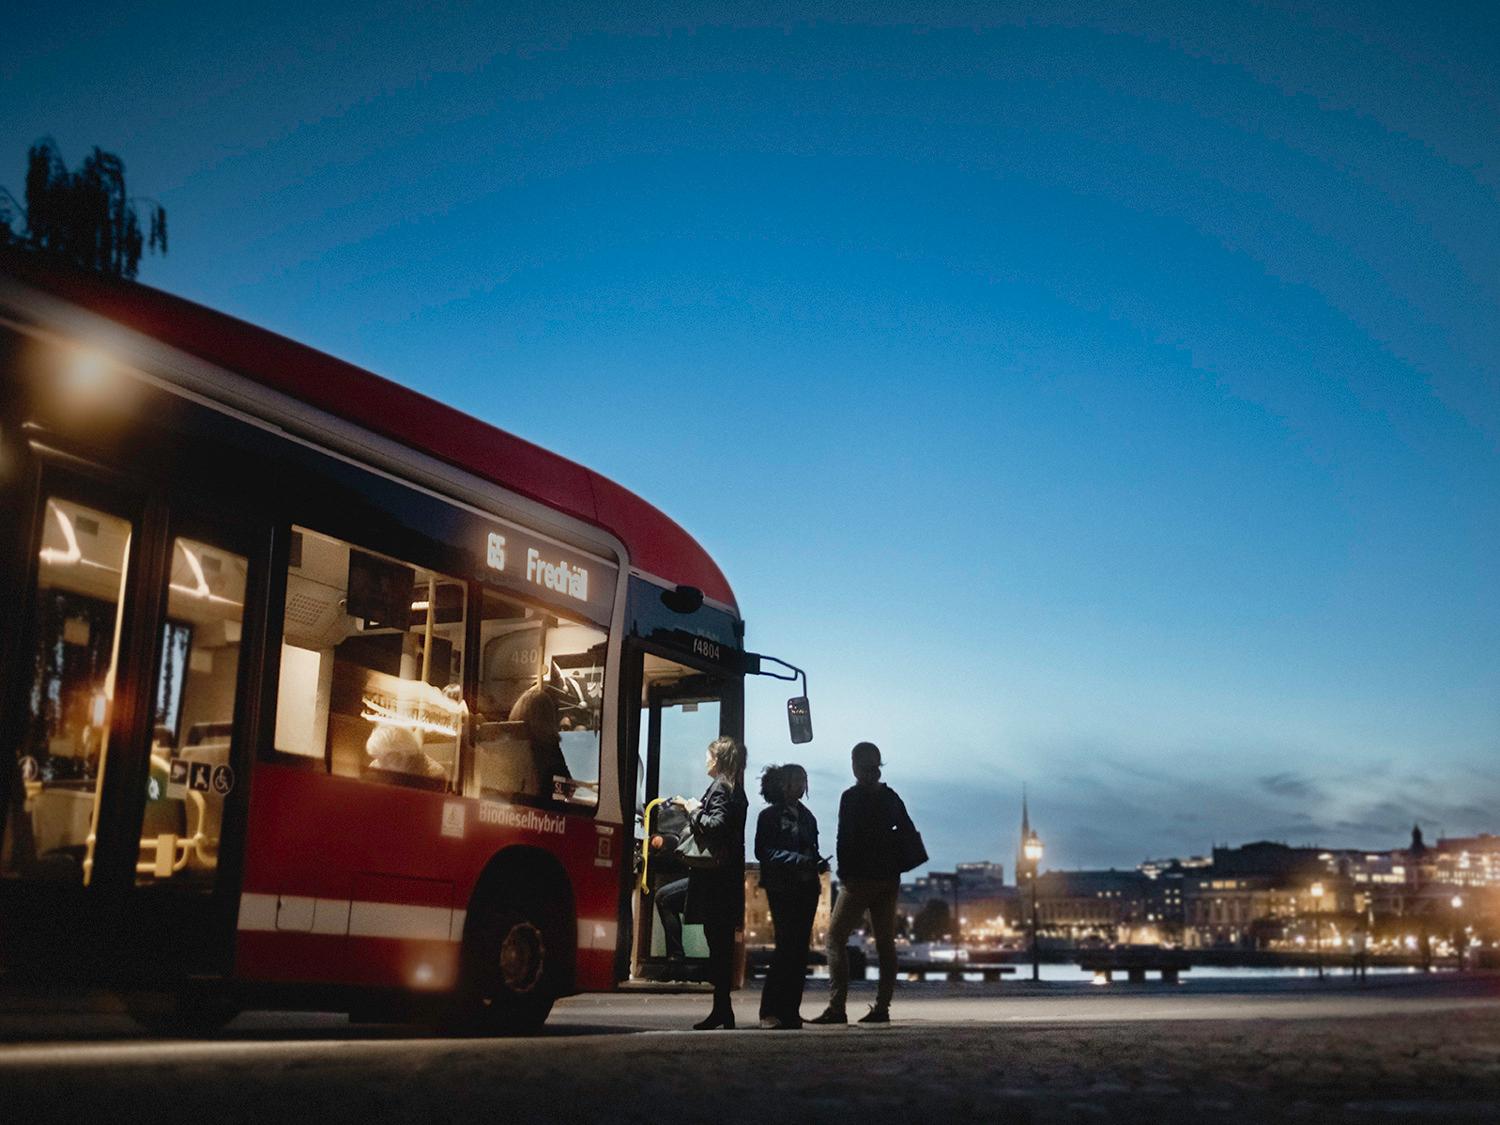 En rödbuss tar emot resenärer under skymning i Stockholm